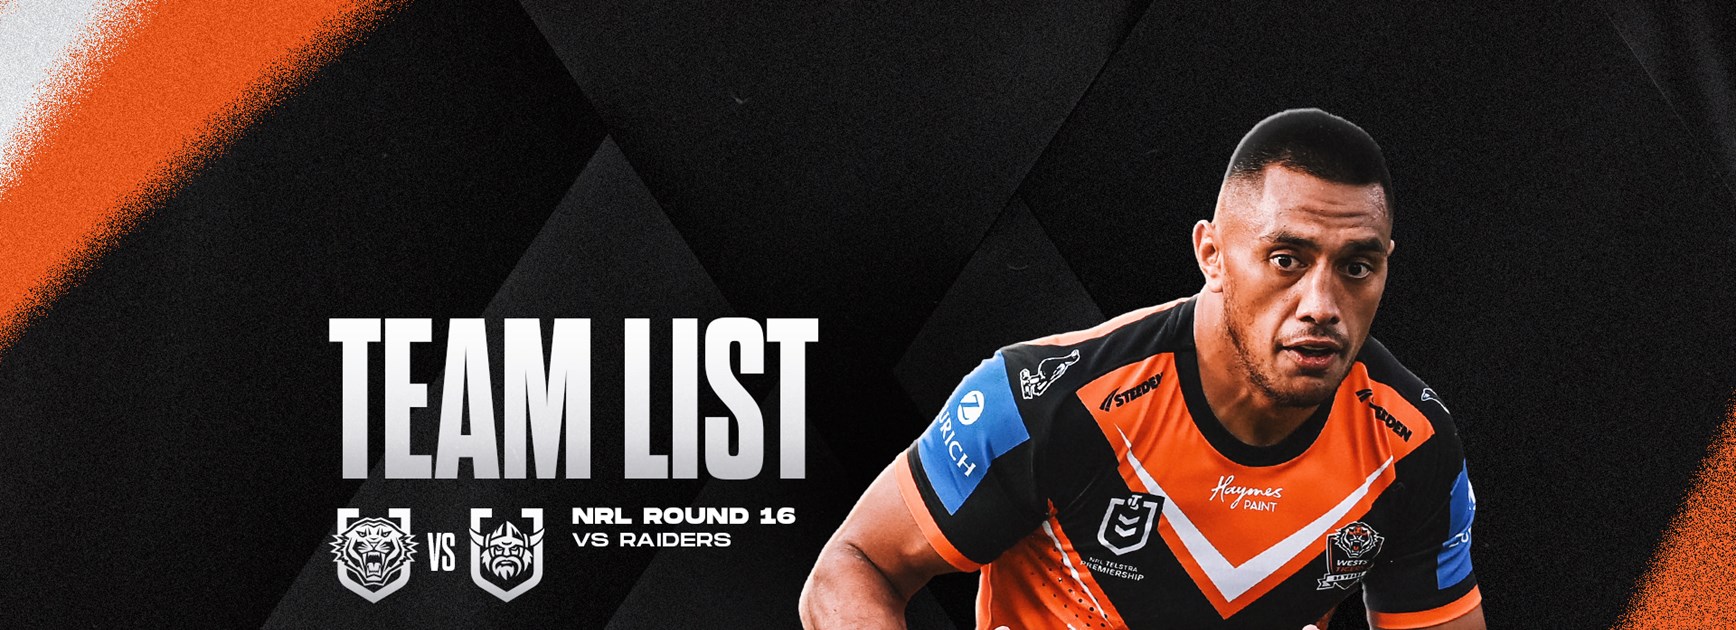 Team List: NRL Round 16 vs Raiders